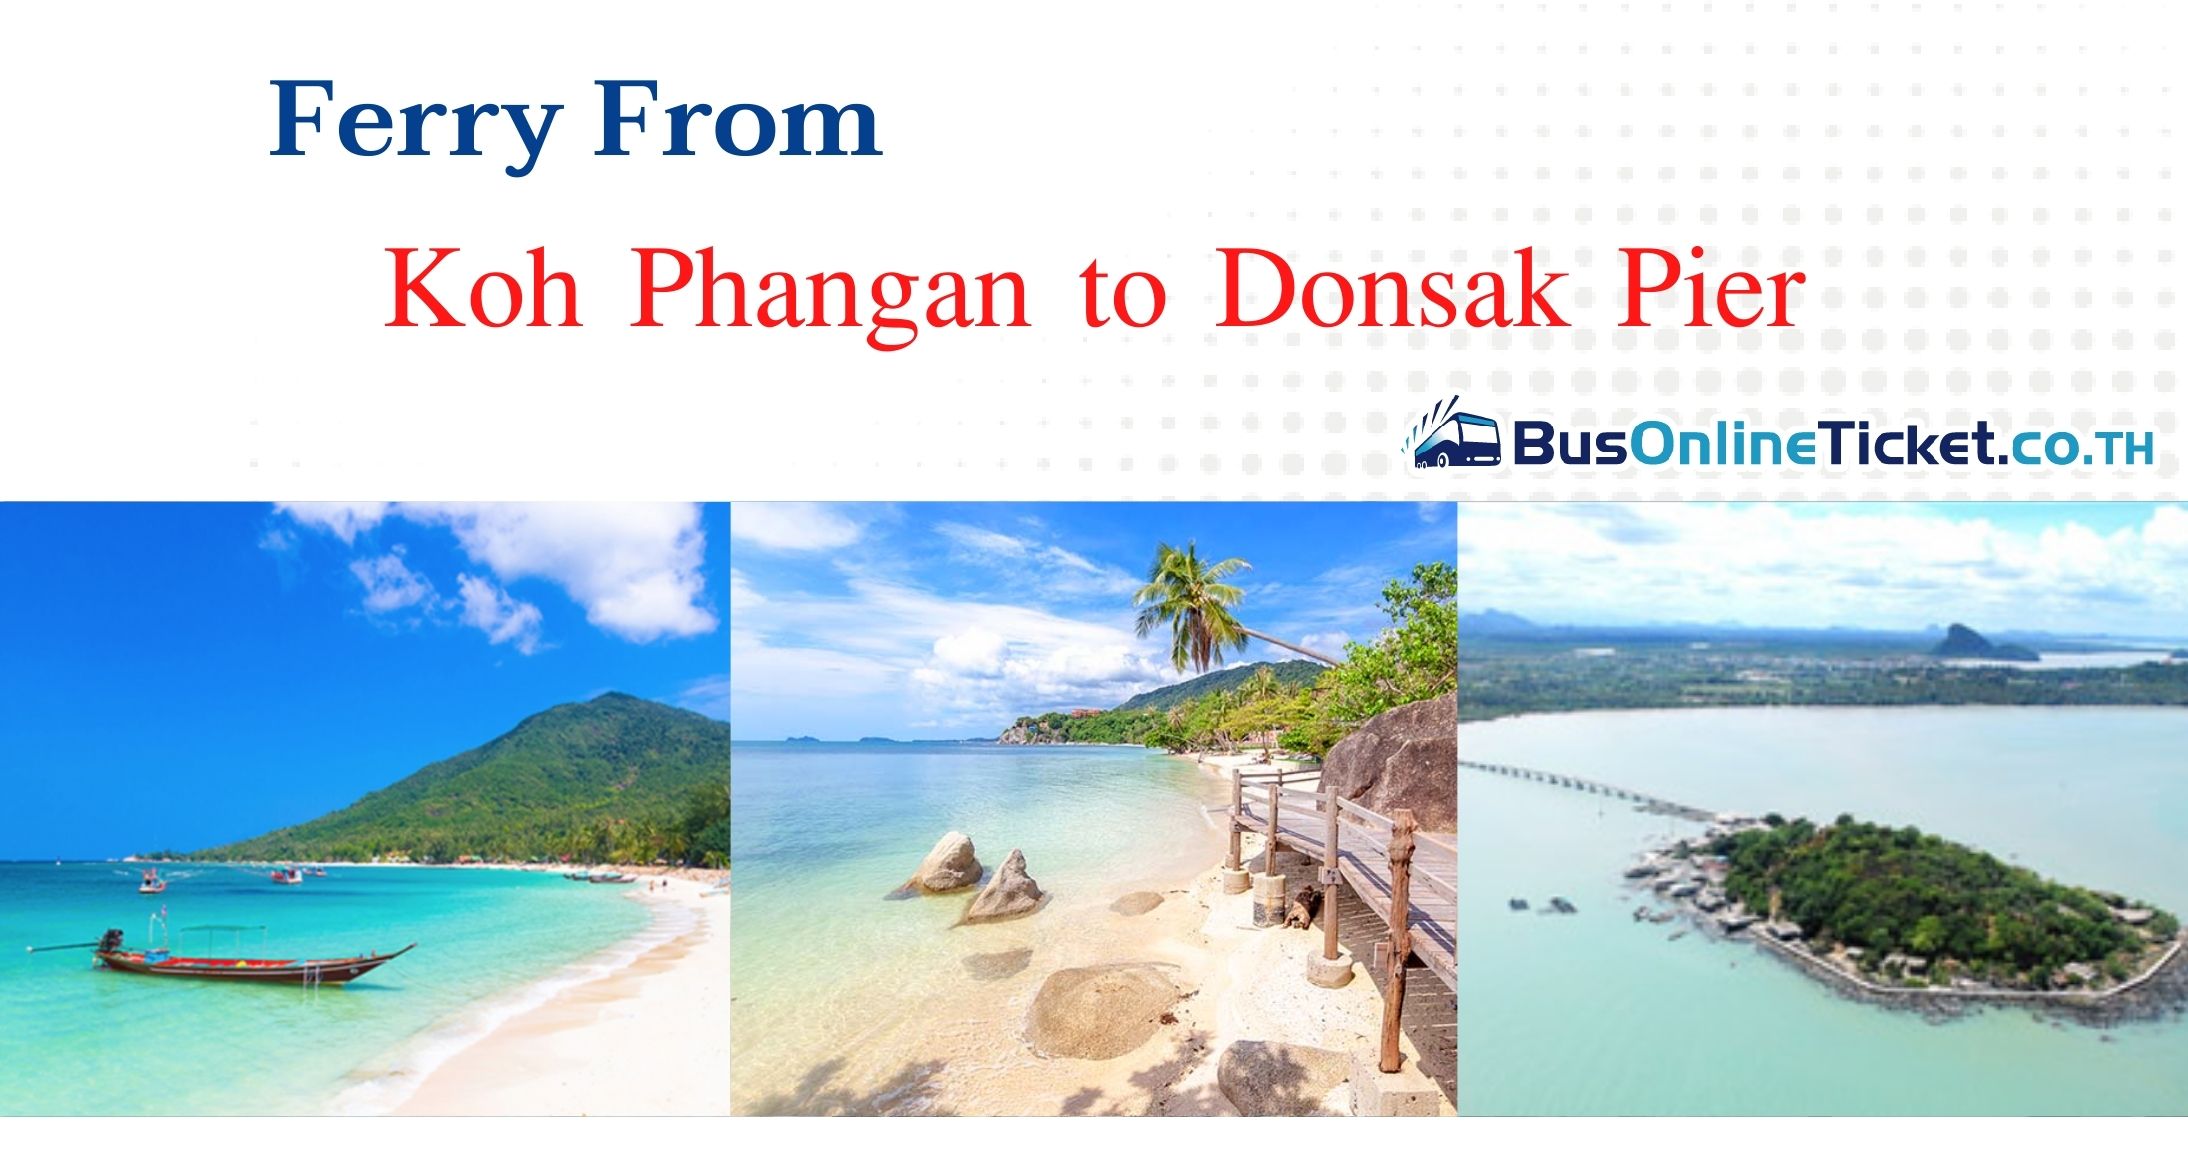 Koh Phangan to Donsak Pier